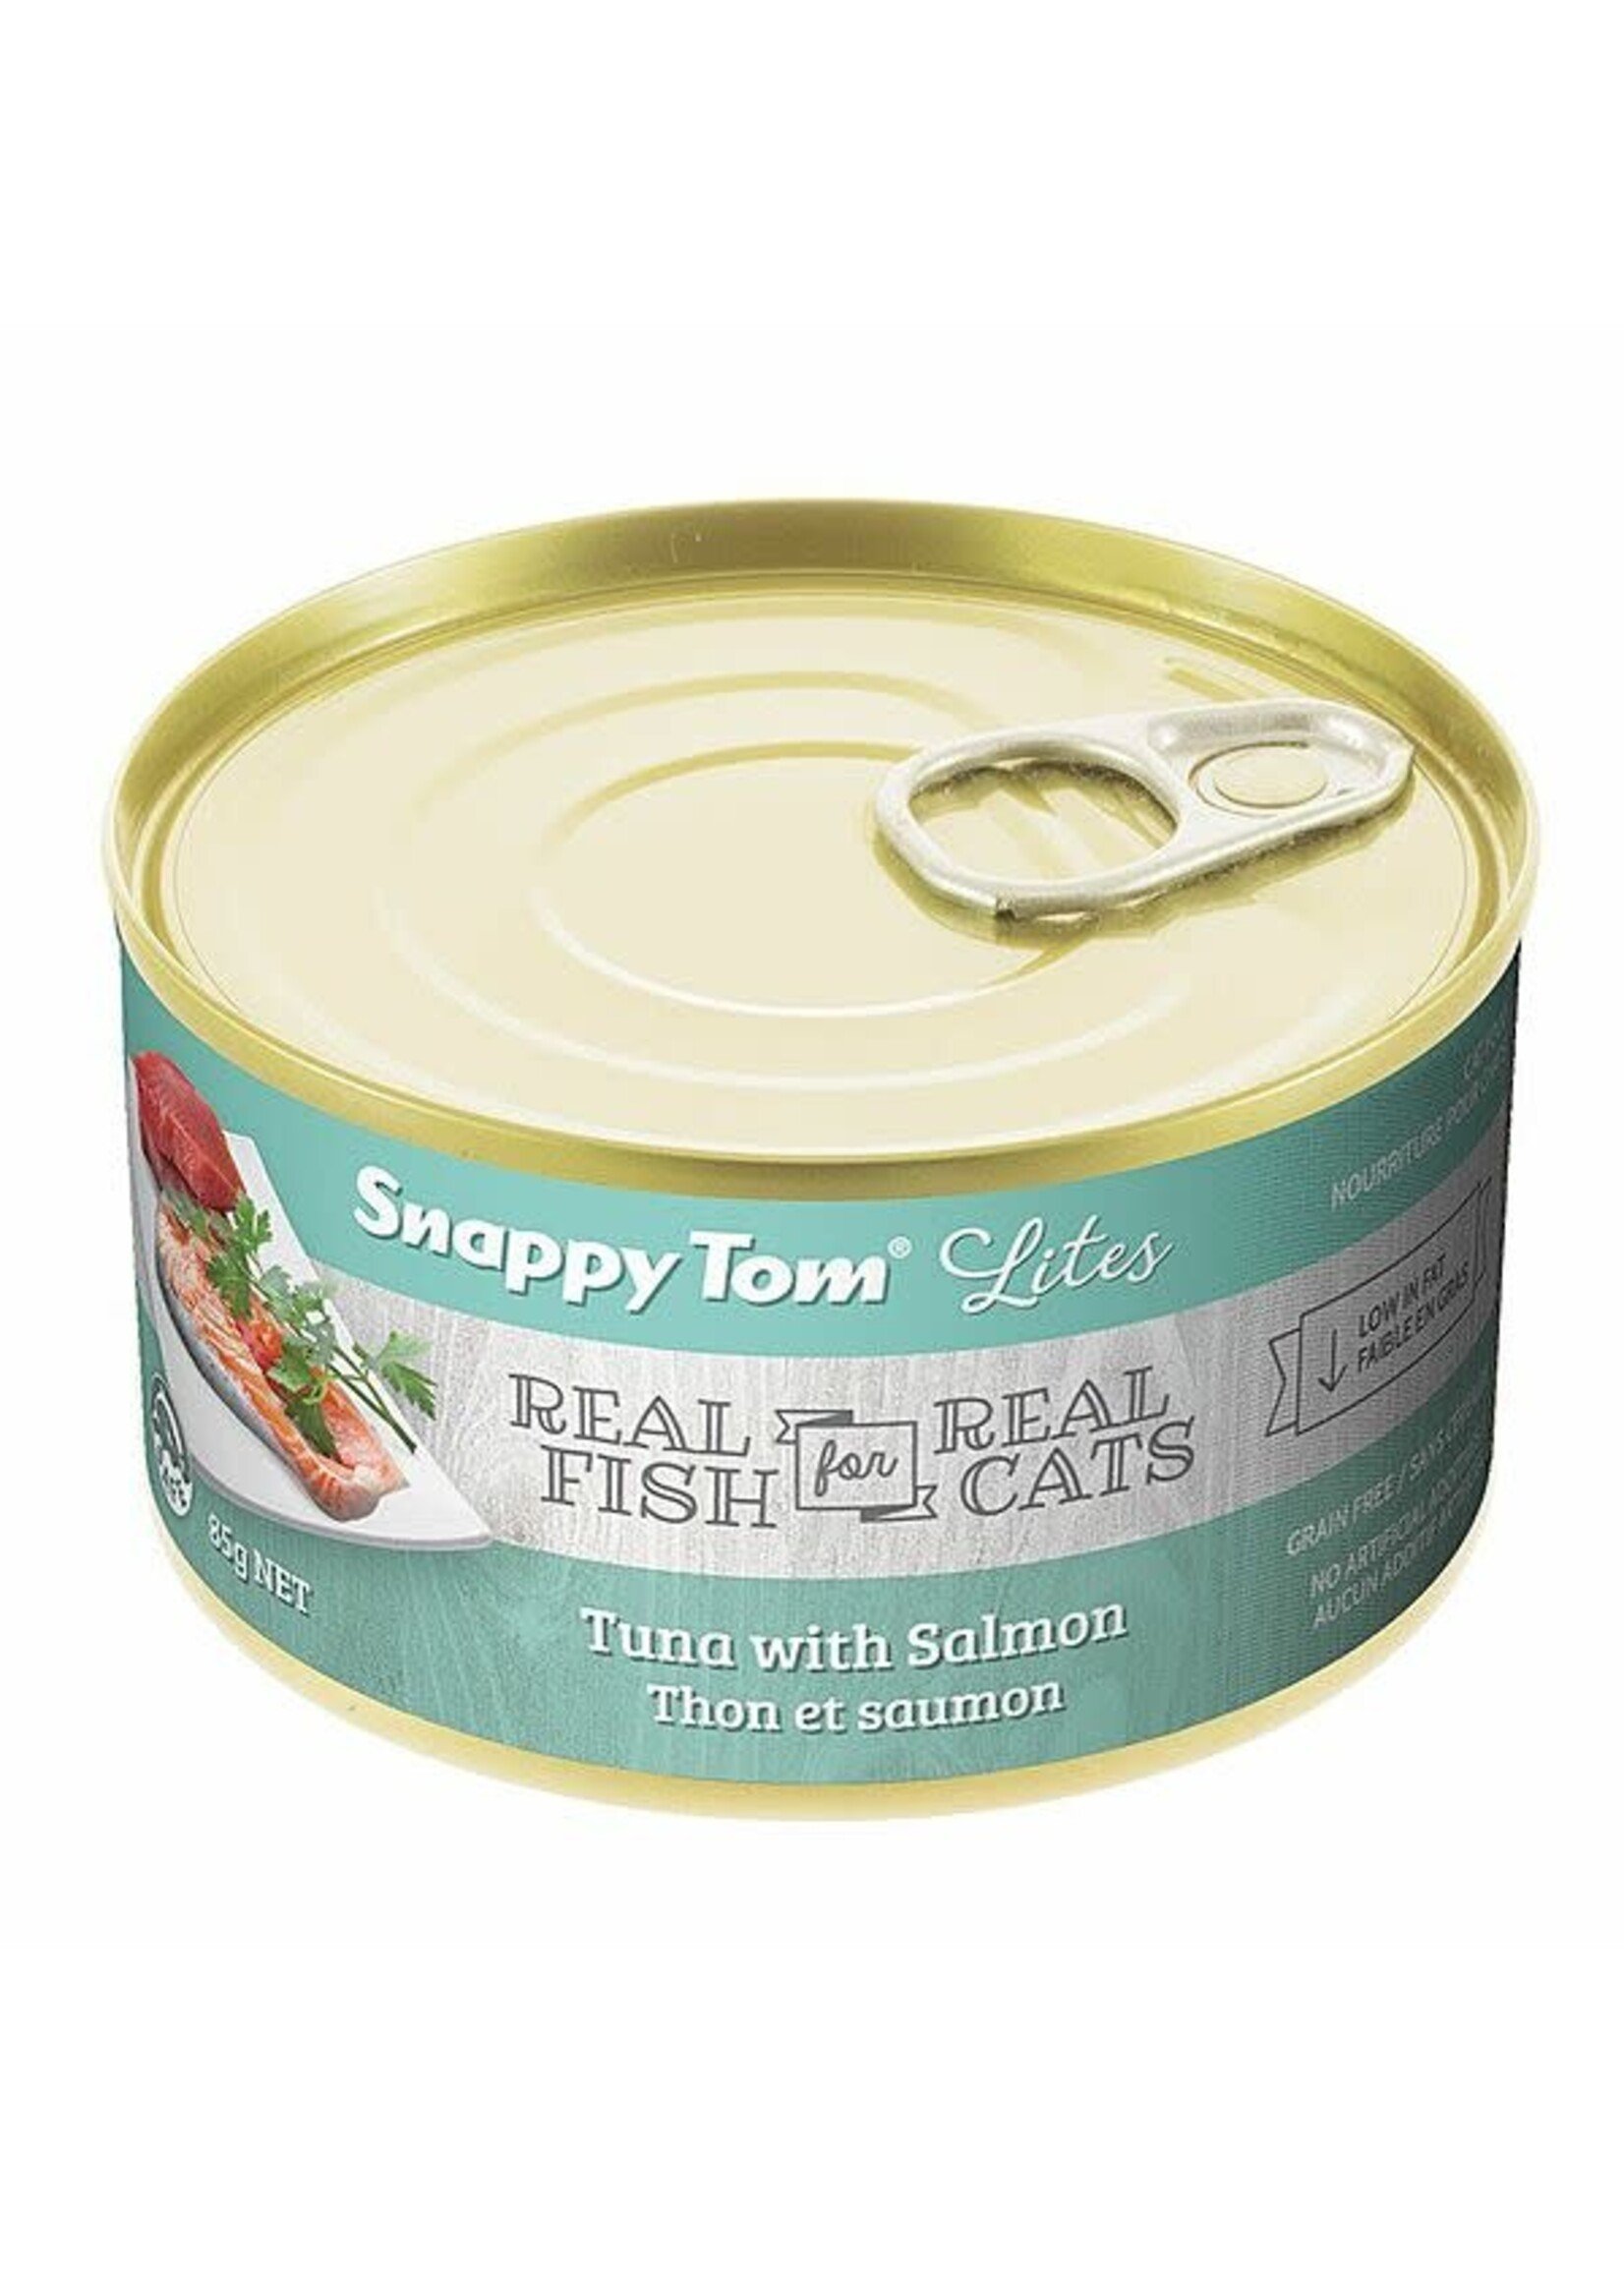 Snappy Tom Snappy Tom - Tuna with Salmon 156g Cat